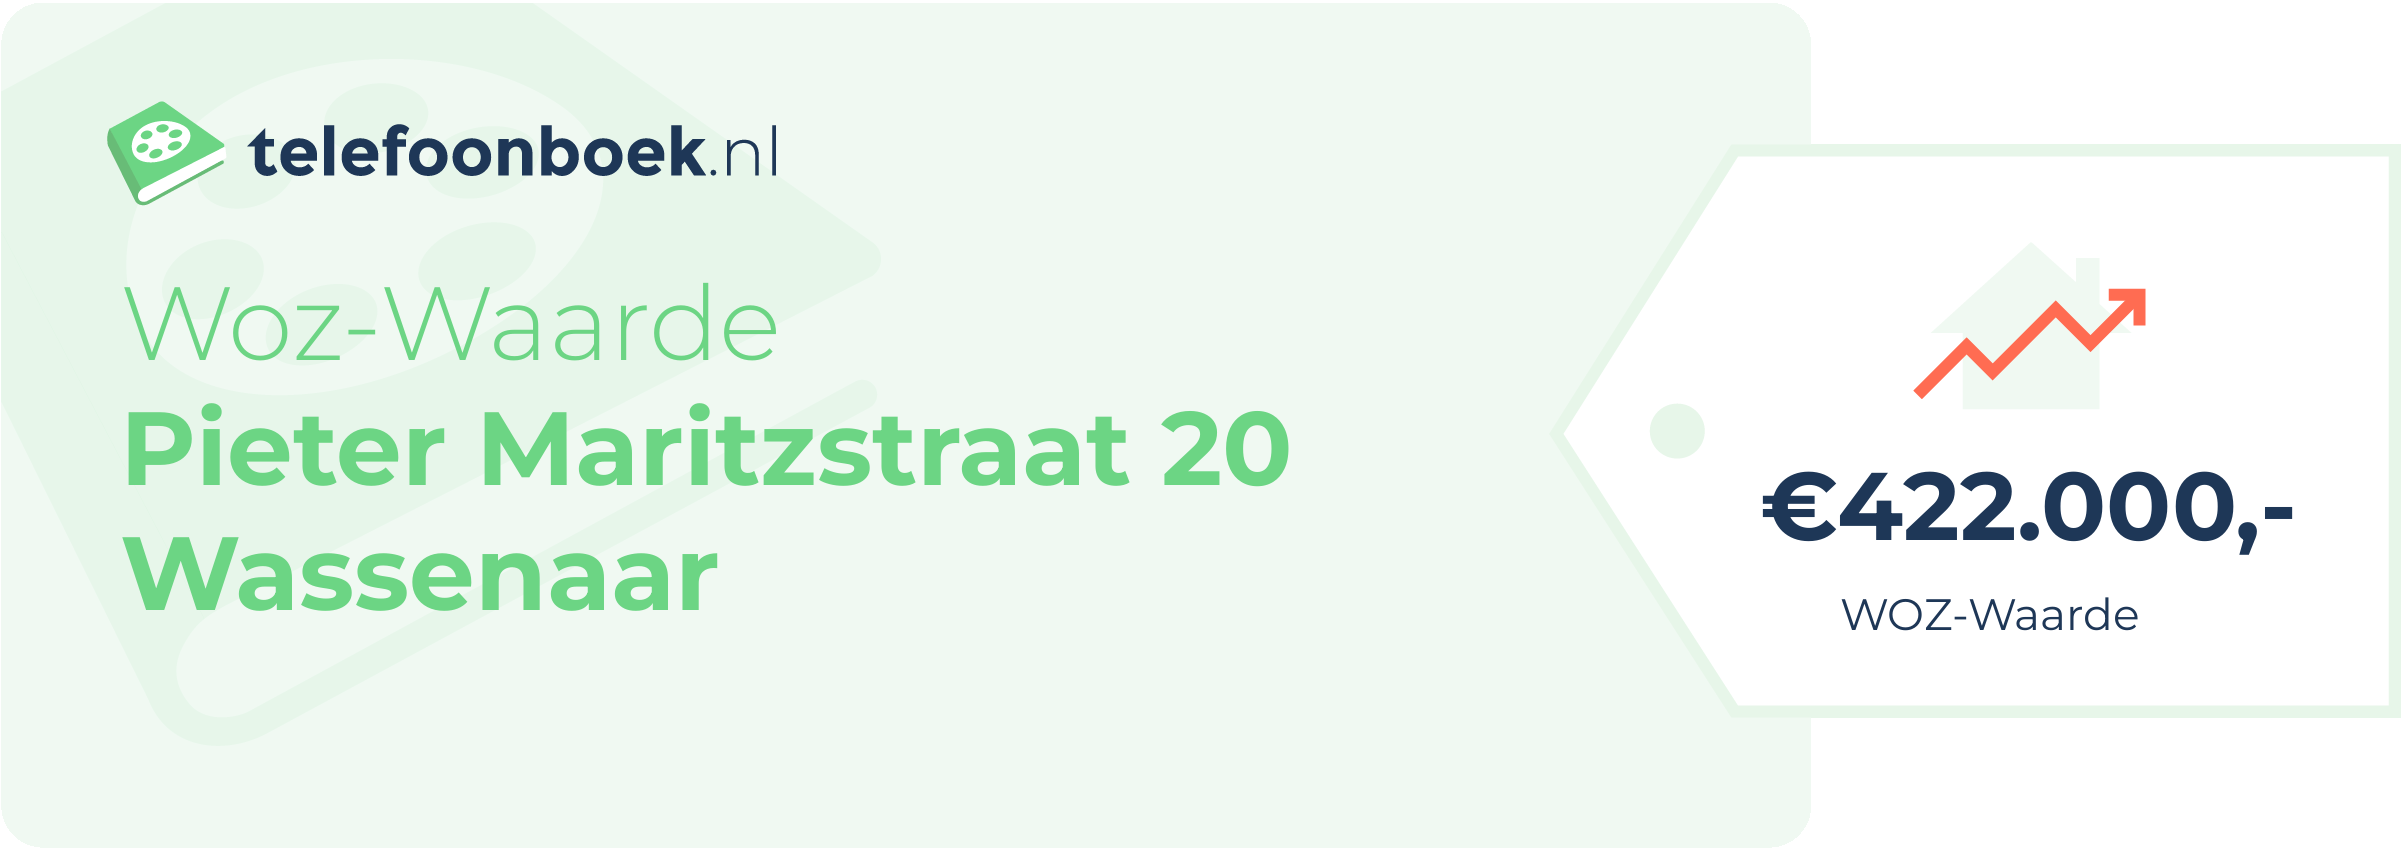 WOZ-waarde Pieter Maritzstraat 20 Wassenaar